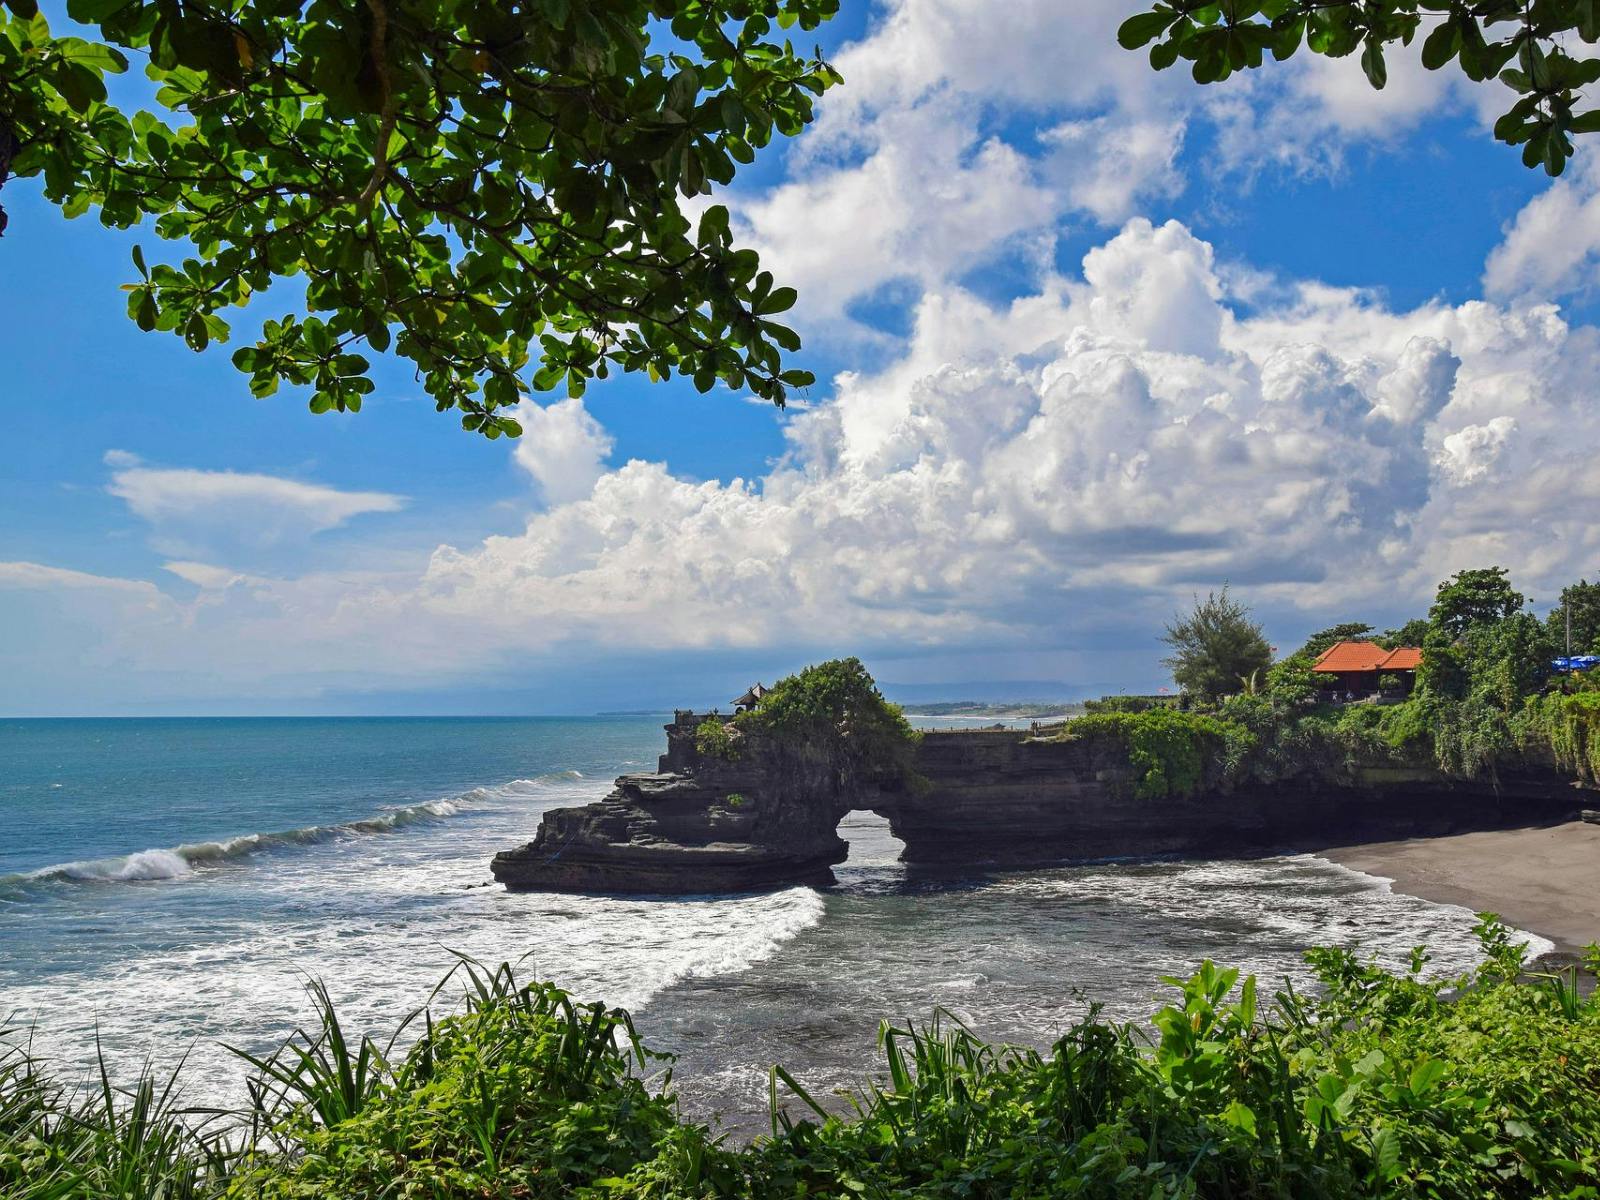 Internships in Bali